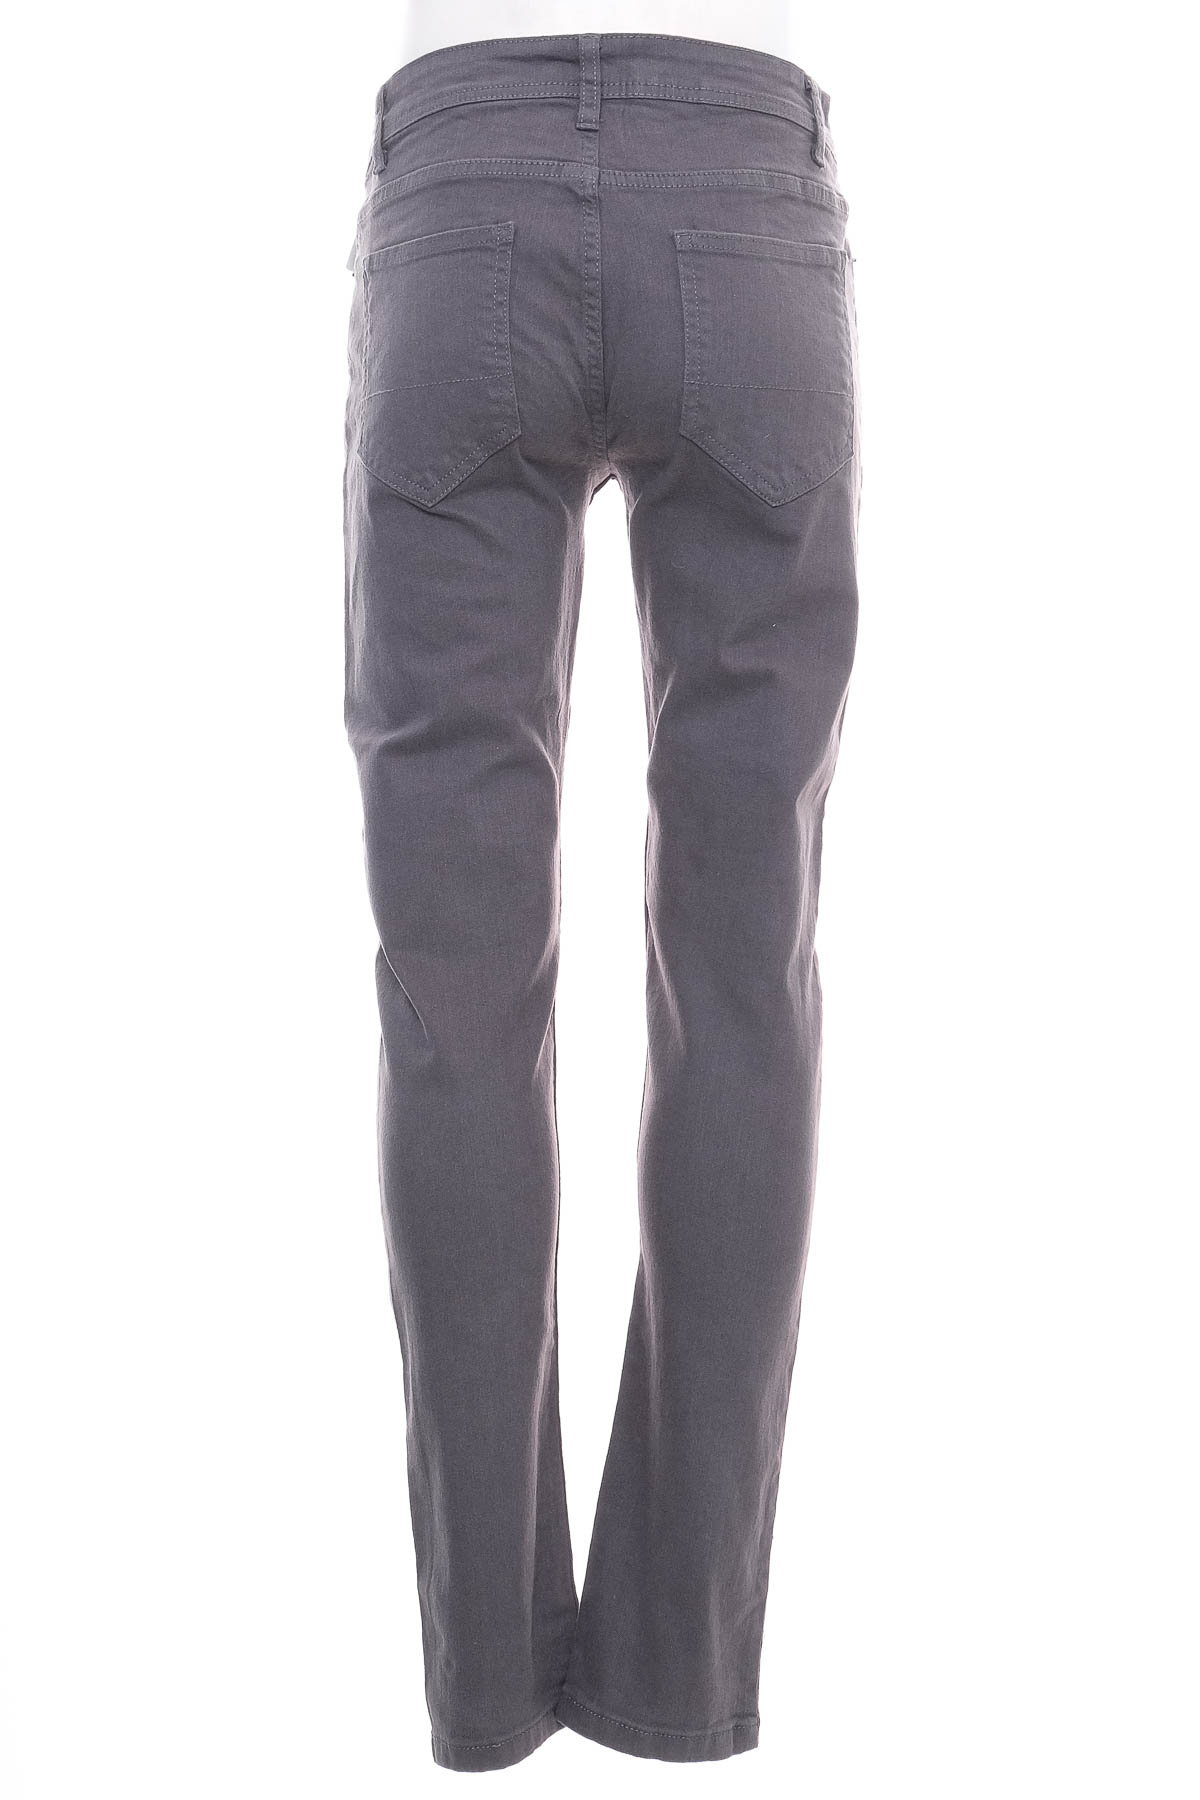 Ανδρικό παντελόνι - Denim Co. - 1